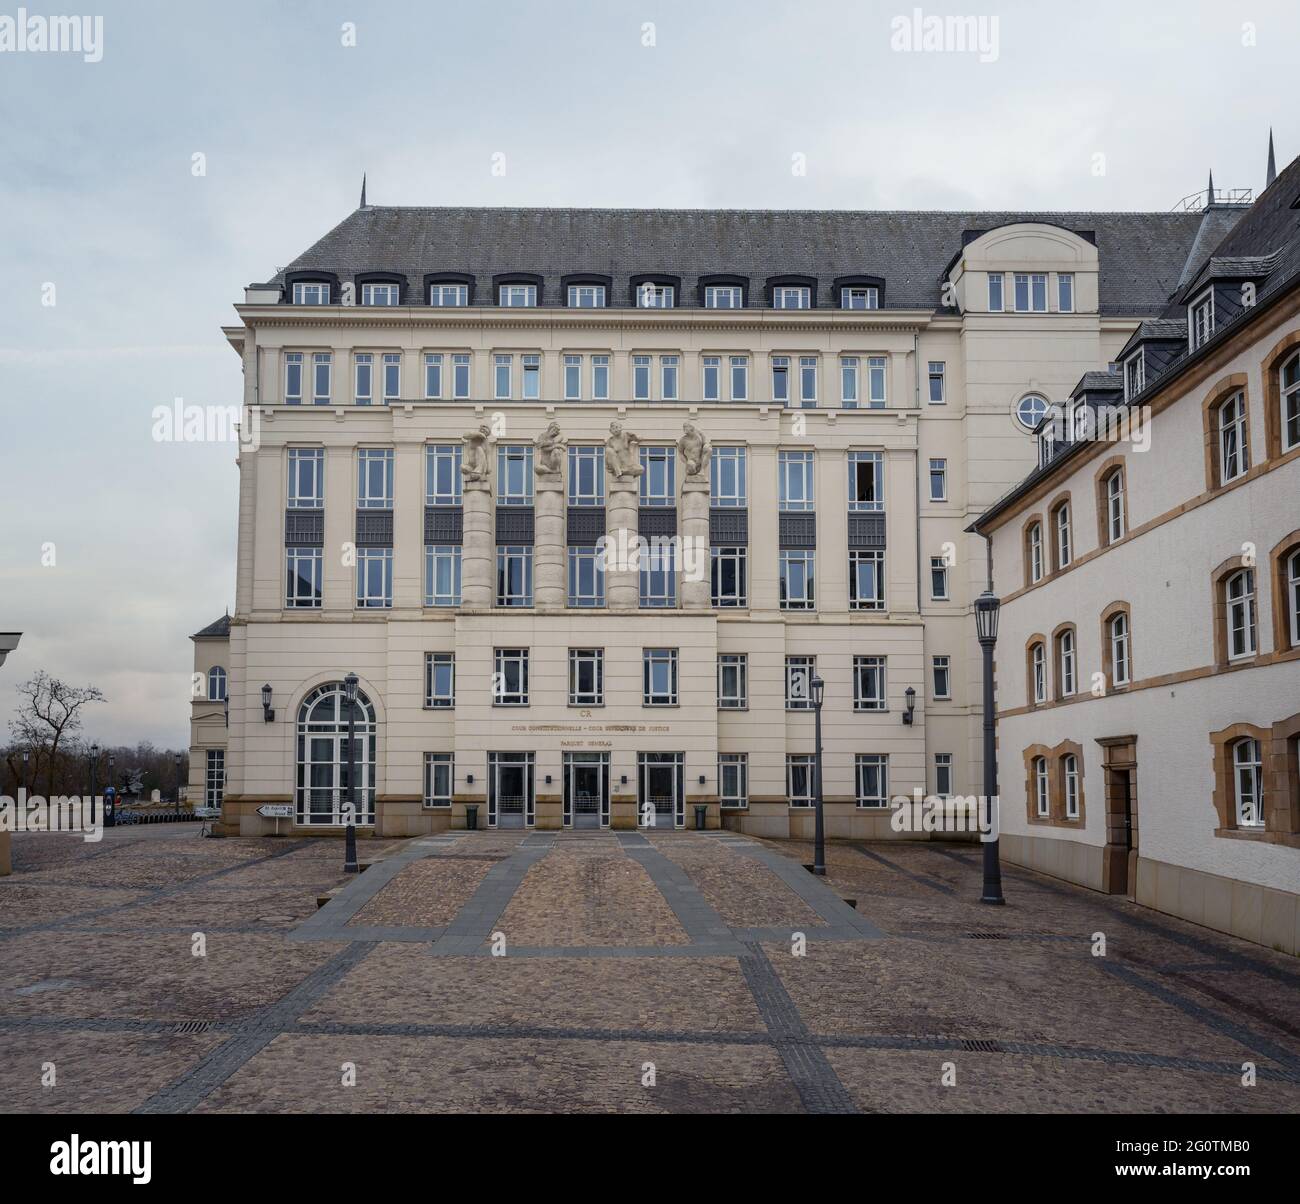 Lussemburgo Città giudiziaria - Palazzo della Corte di giustizia superiore - Lussemburgo, Lussemburgo Foto Stock